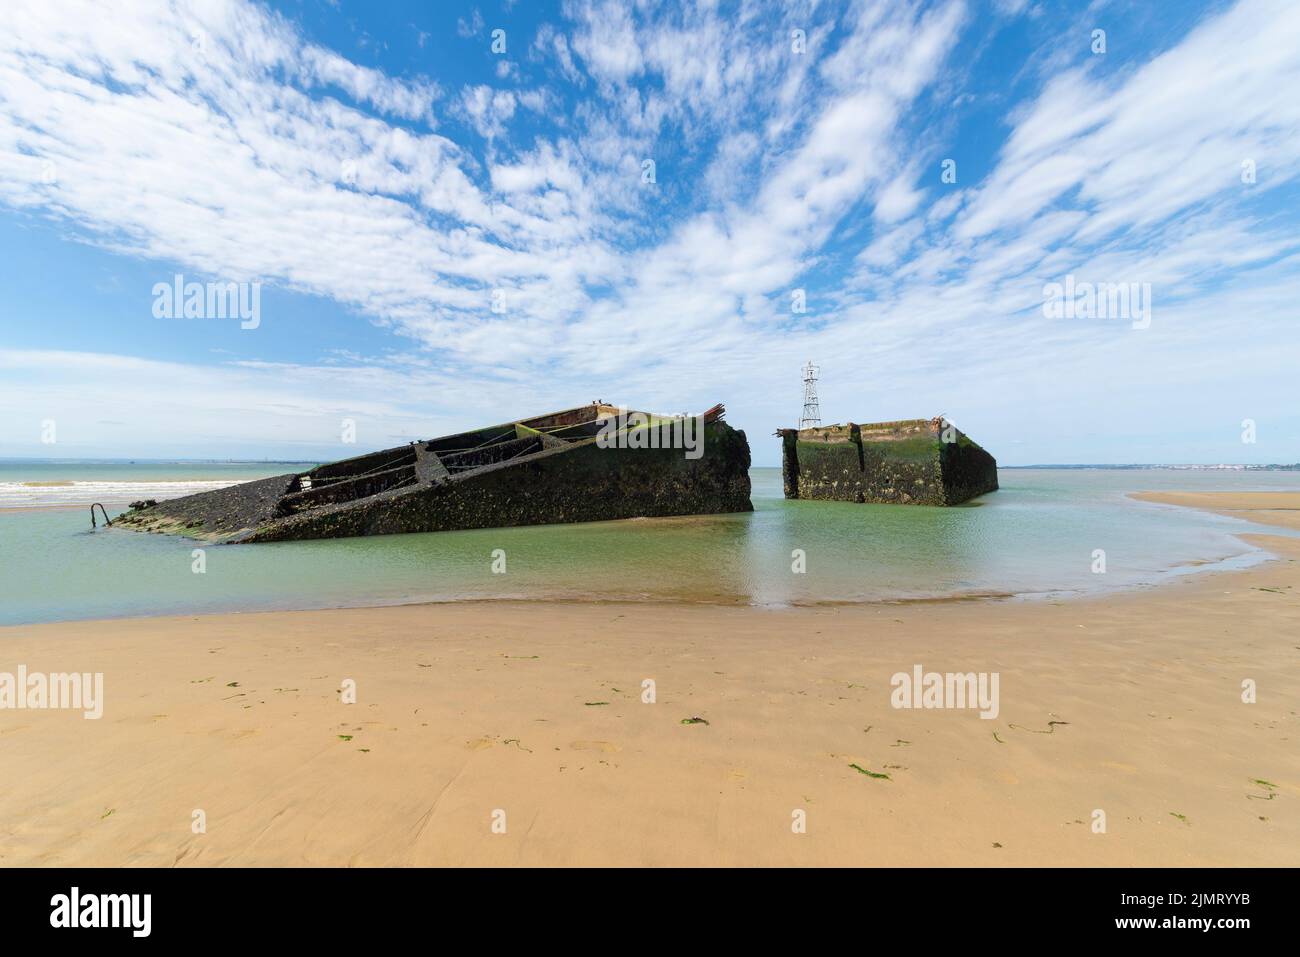 D-Day-Abschnitt von Mulberry Harbour oder Harbour, der in der Themsemündung in der Nähe von Southend on Sea, Essex, liegt. Historisches Relikt aus dem Zweiten Weltkrieg auf Sandbank Stockfoto